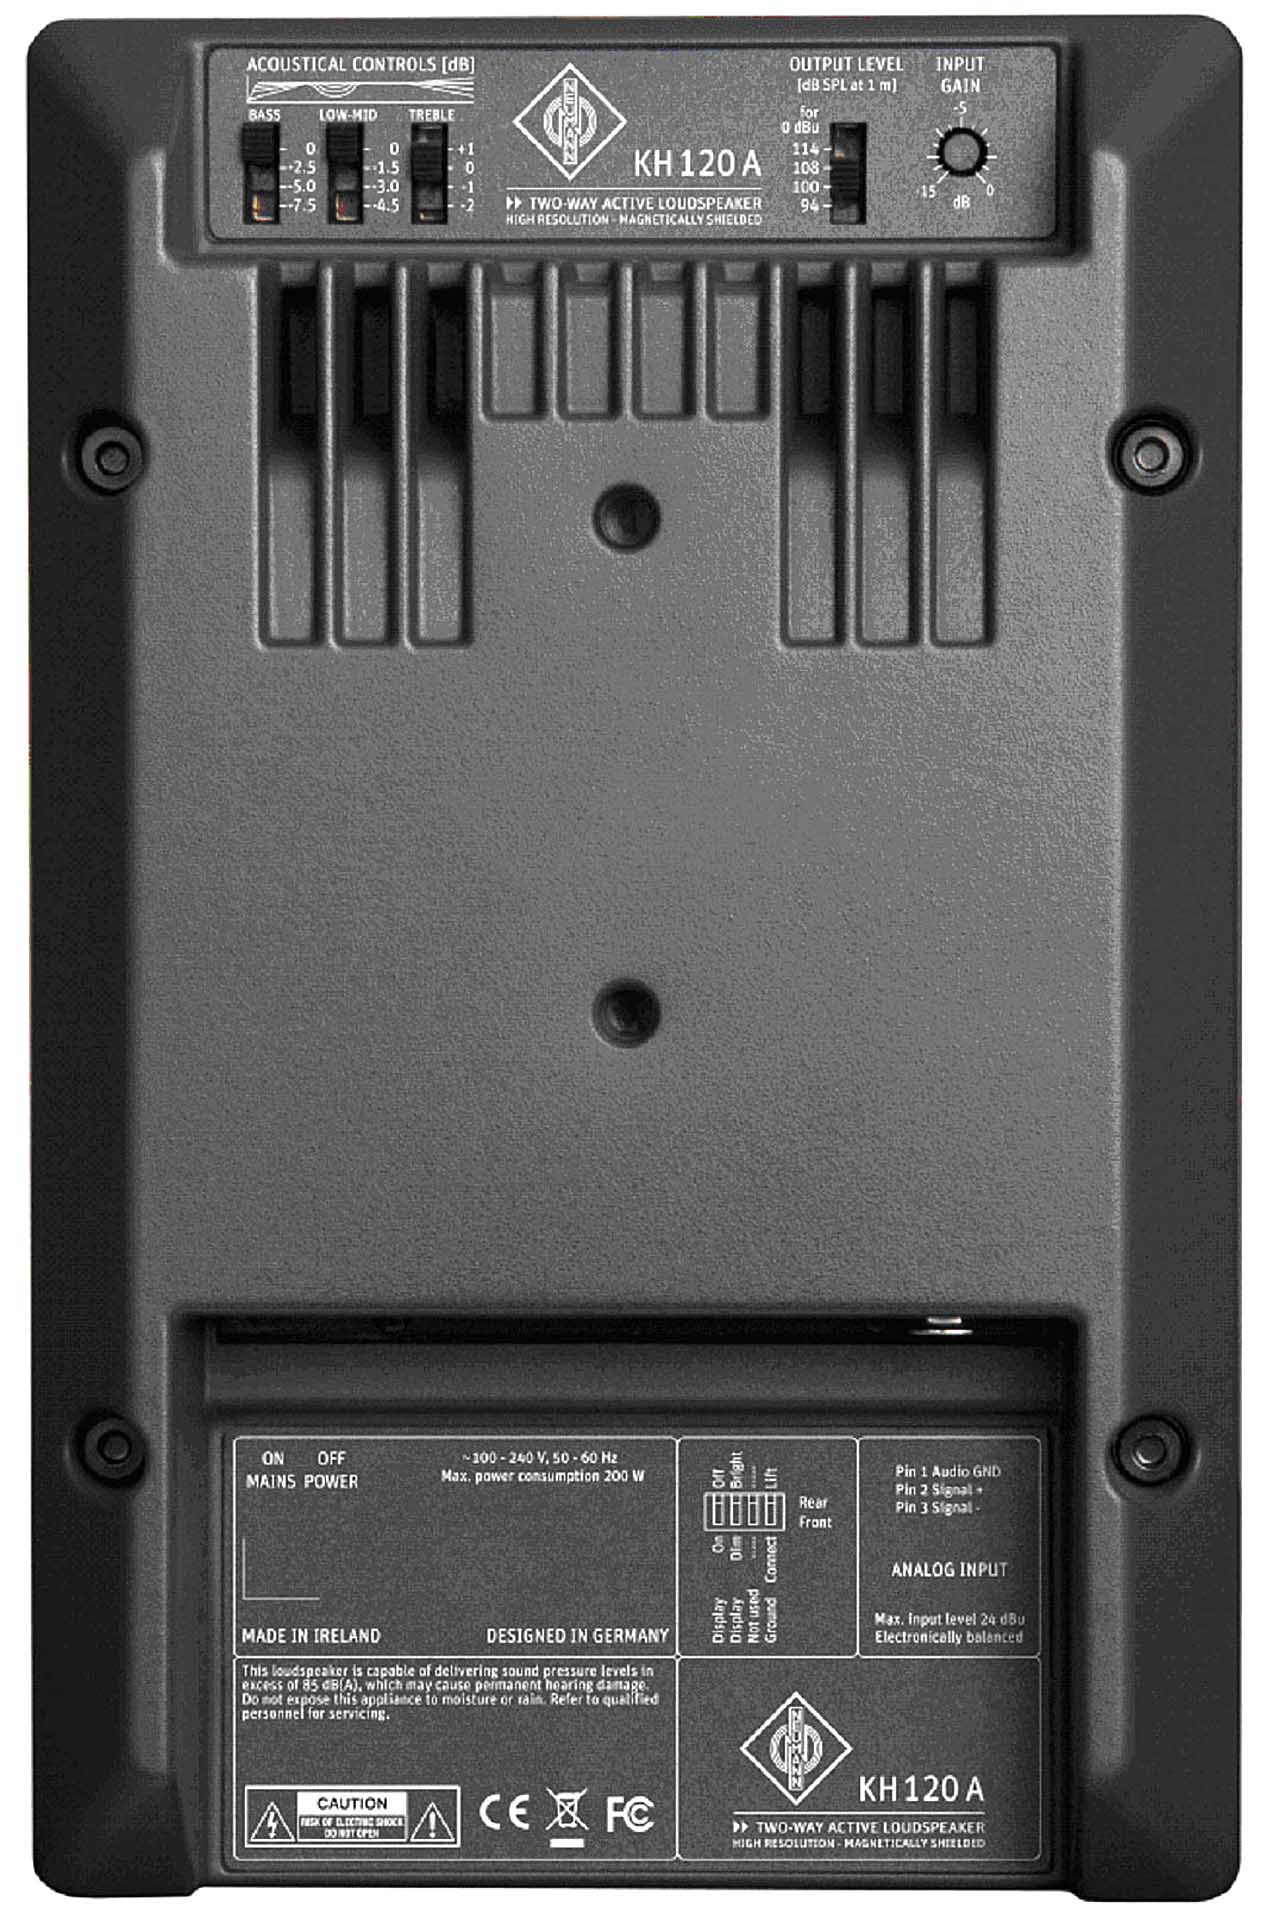 Neumann KH 120 Powered Monitor, 100-Watt Powered, Bi-Amped, 5.25" Nearfield Studio Monitor Monitors, New-In-Box